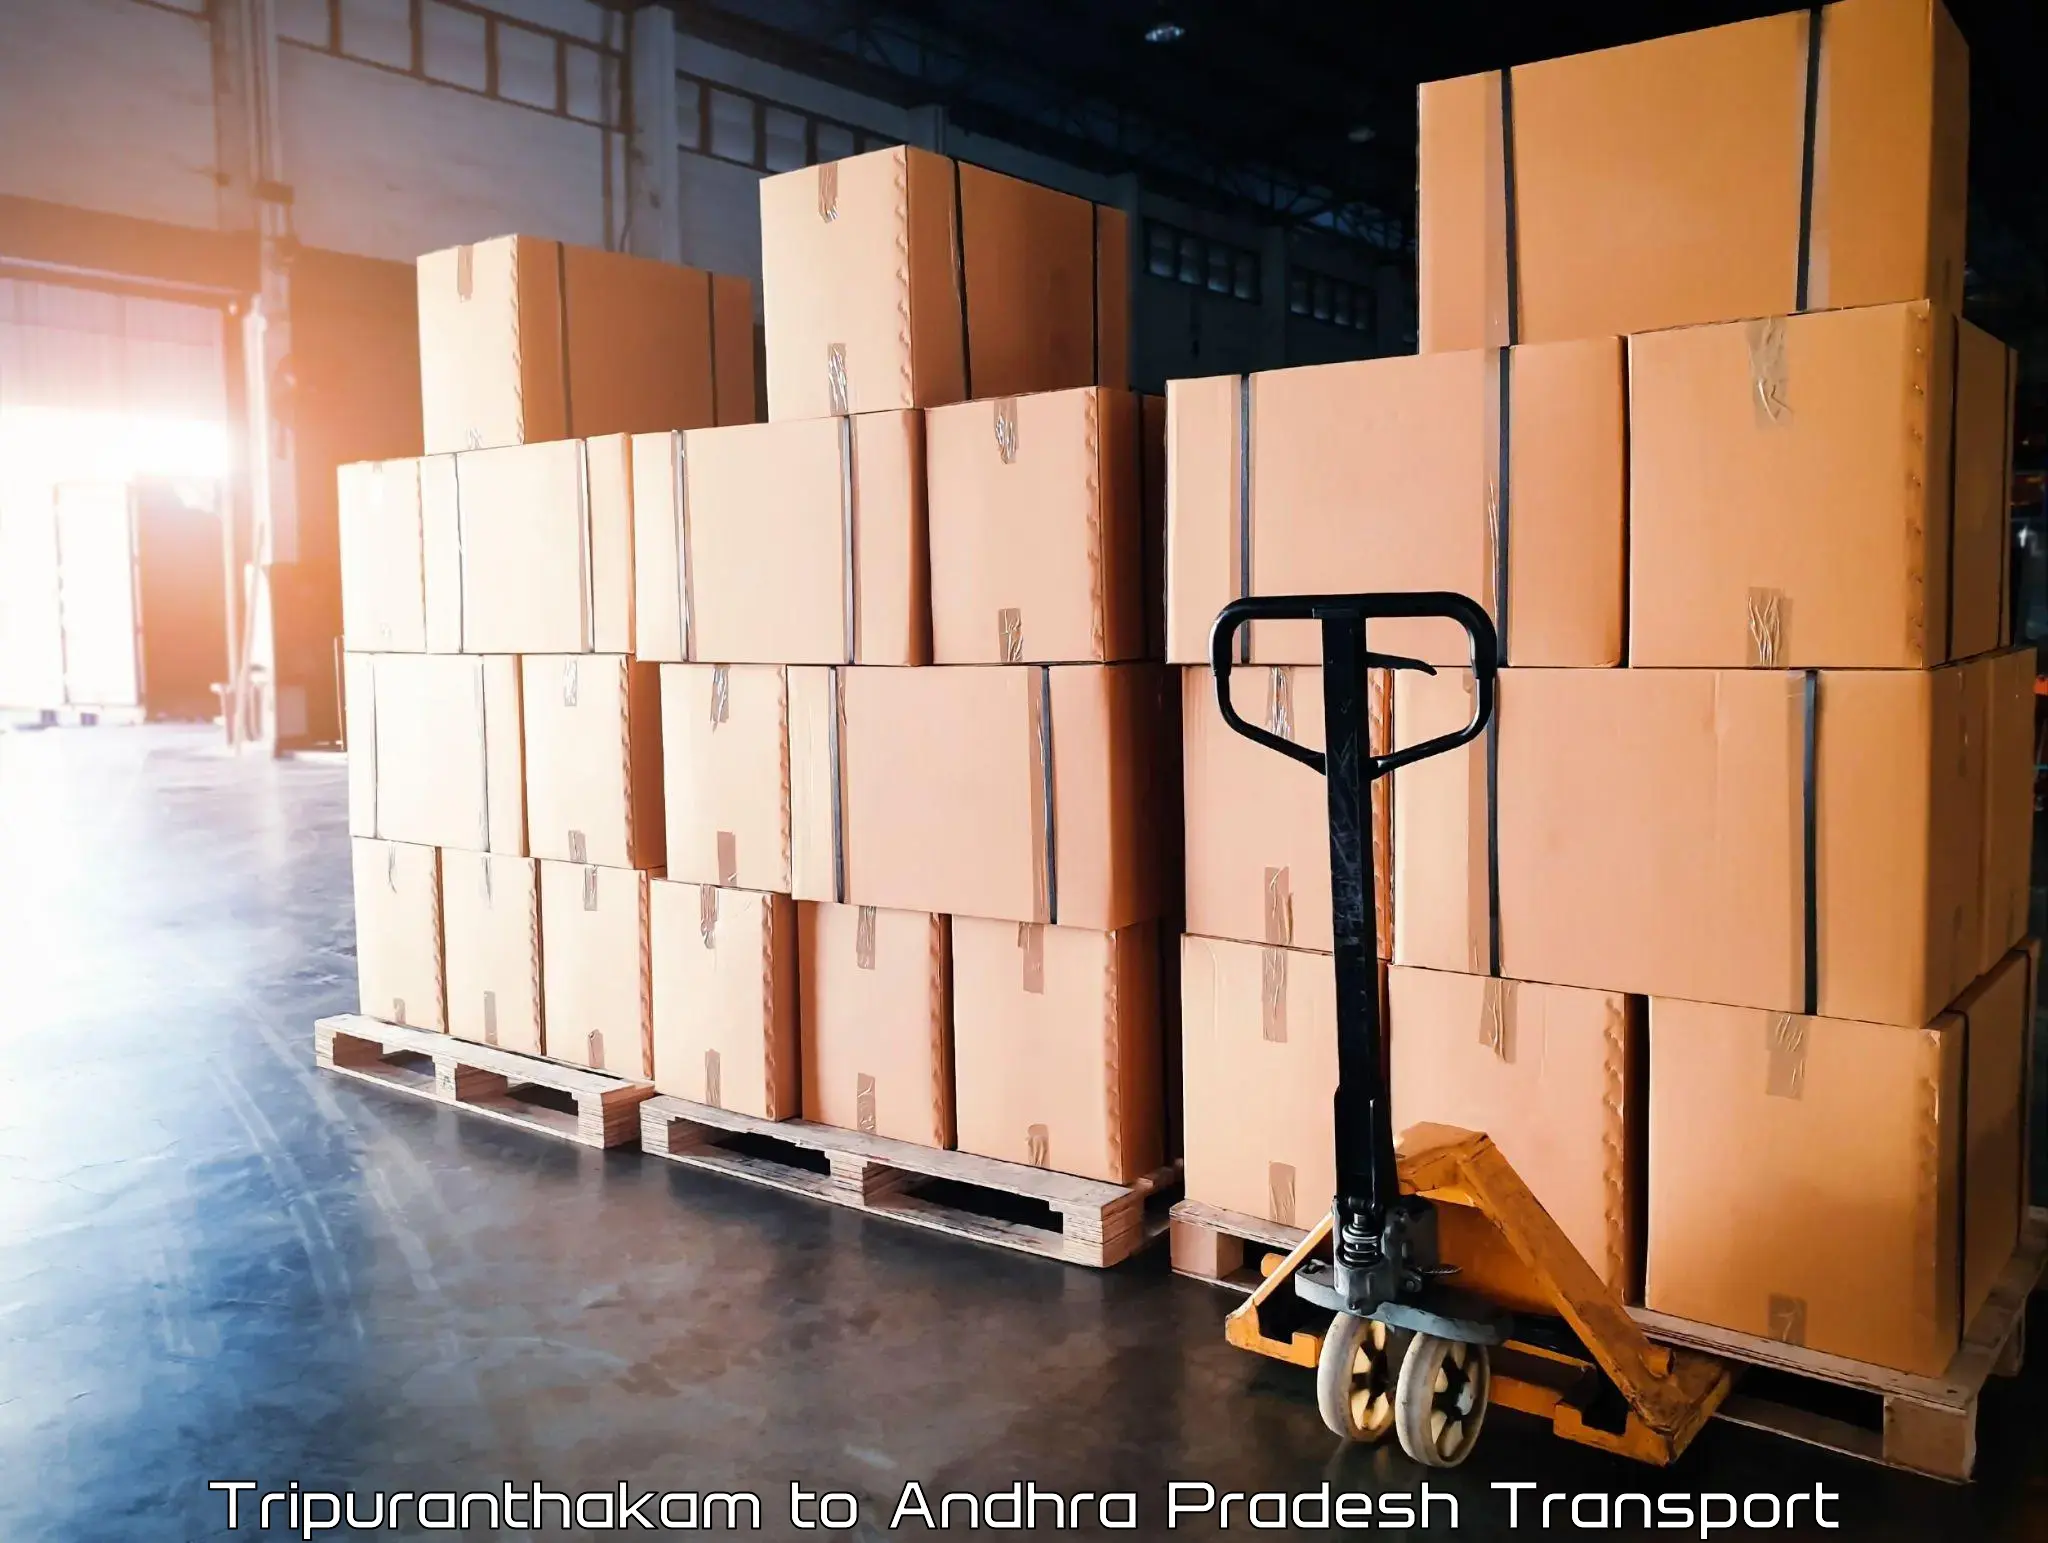 Furniture transport service Tripuranthakam to Andhra Pradesh